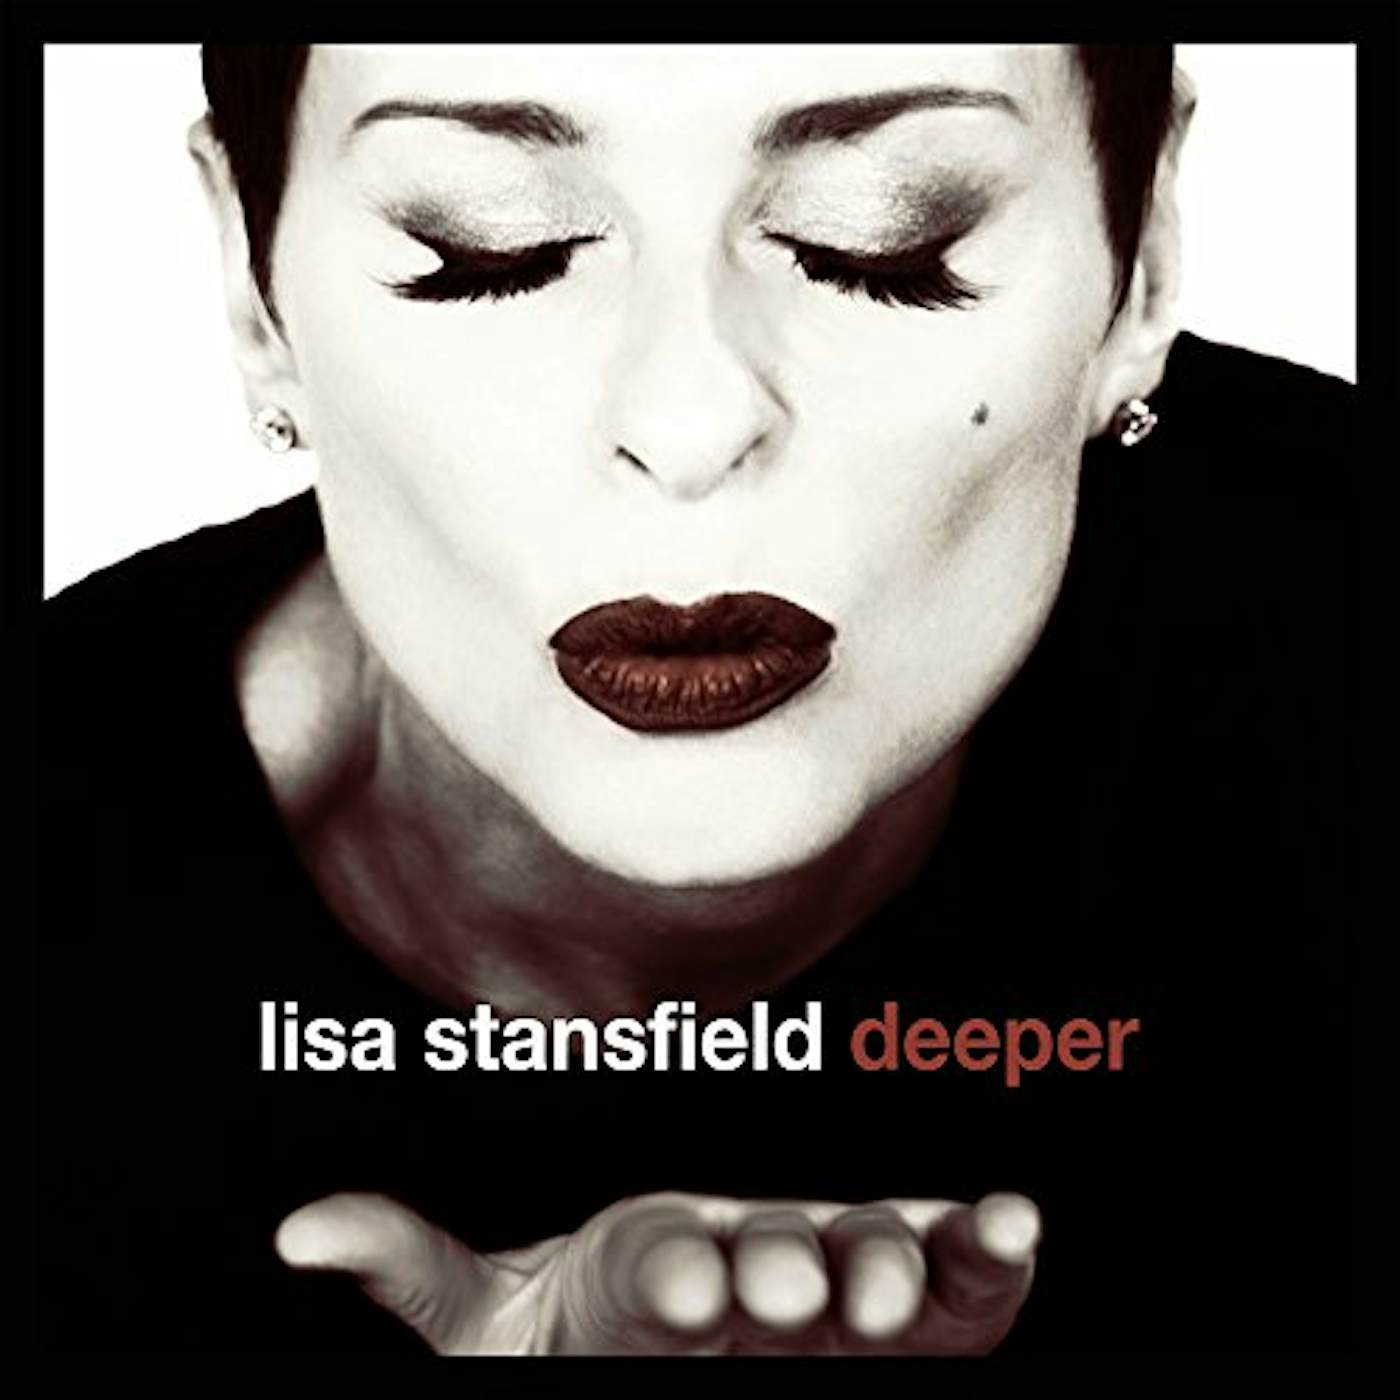 Lisa Stansfield Deeper Vinyl Record